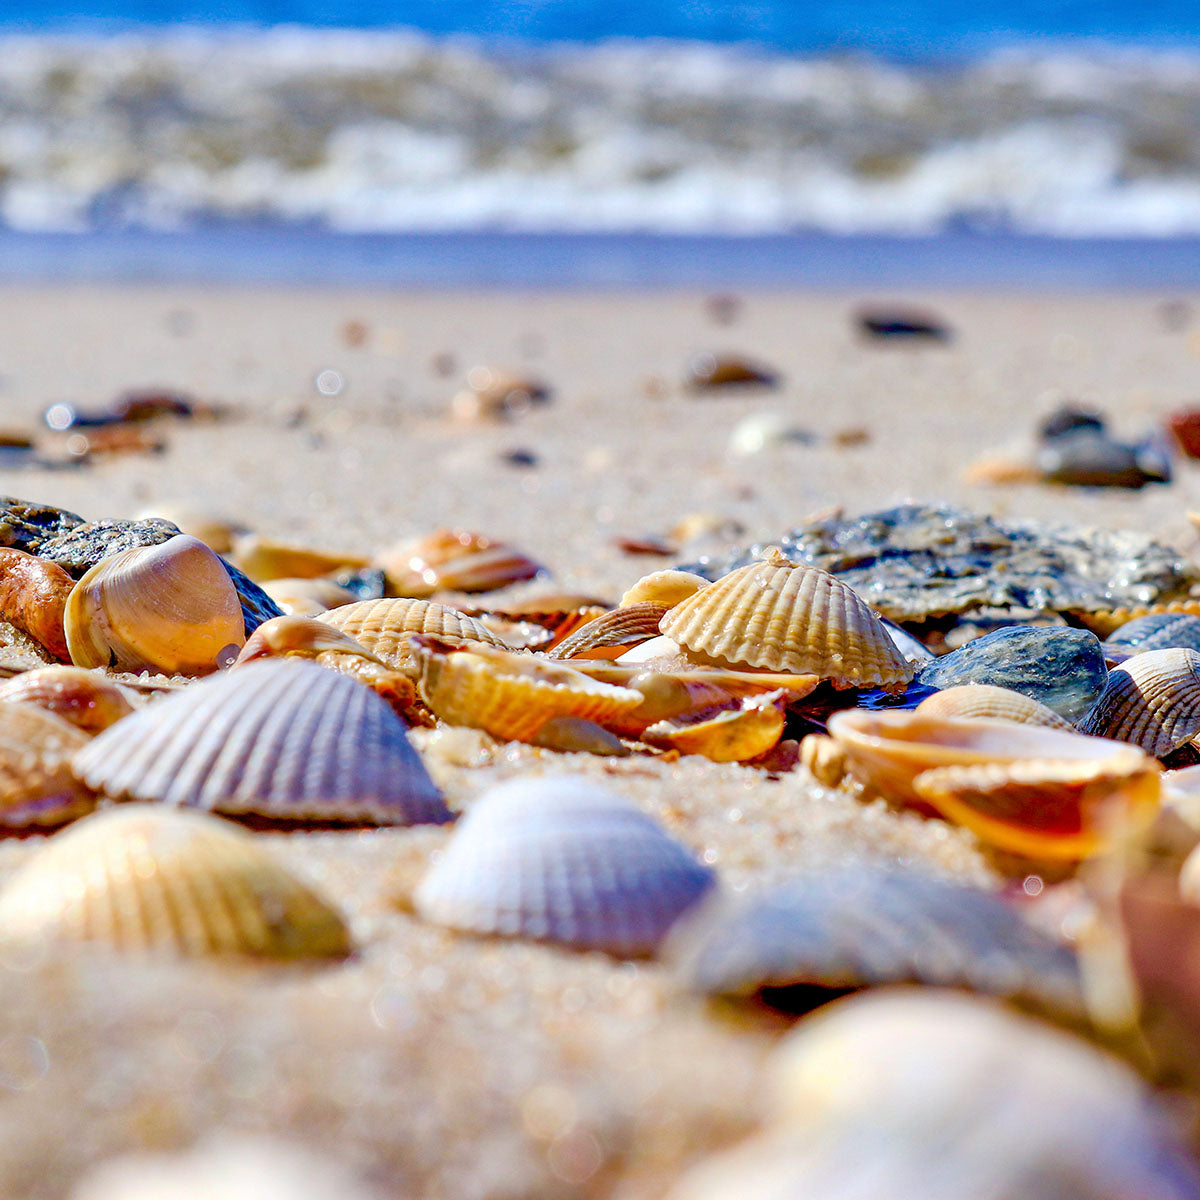 Das rd-pictures Motiv "Muscheln" zeigt Muscheln, die an den Strand auf Sylt gespült wurden. Im Hintergrund ist die Nordsee zu sehen.